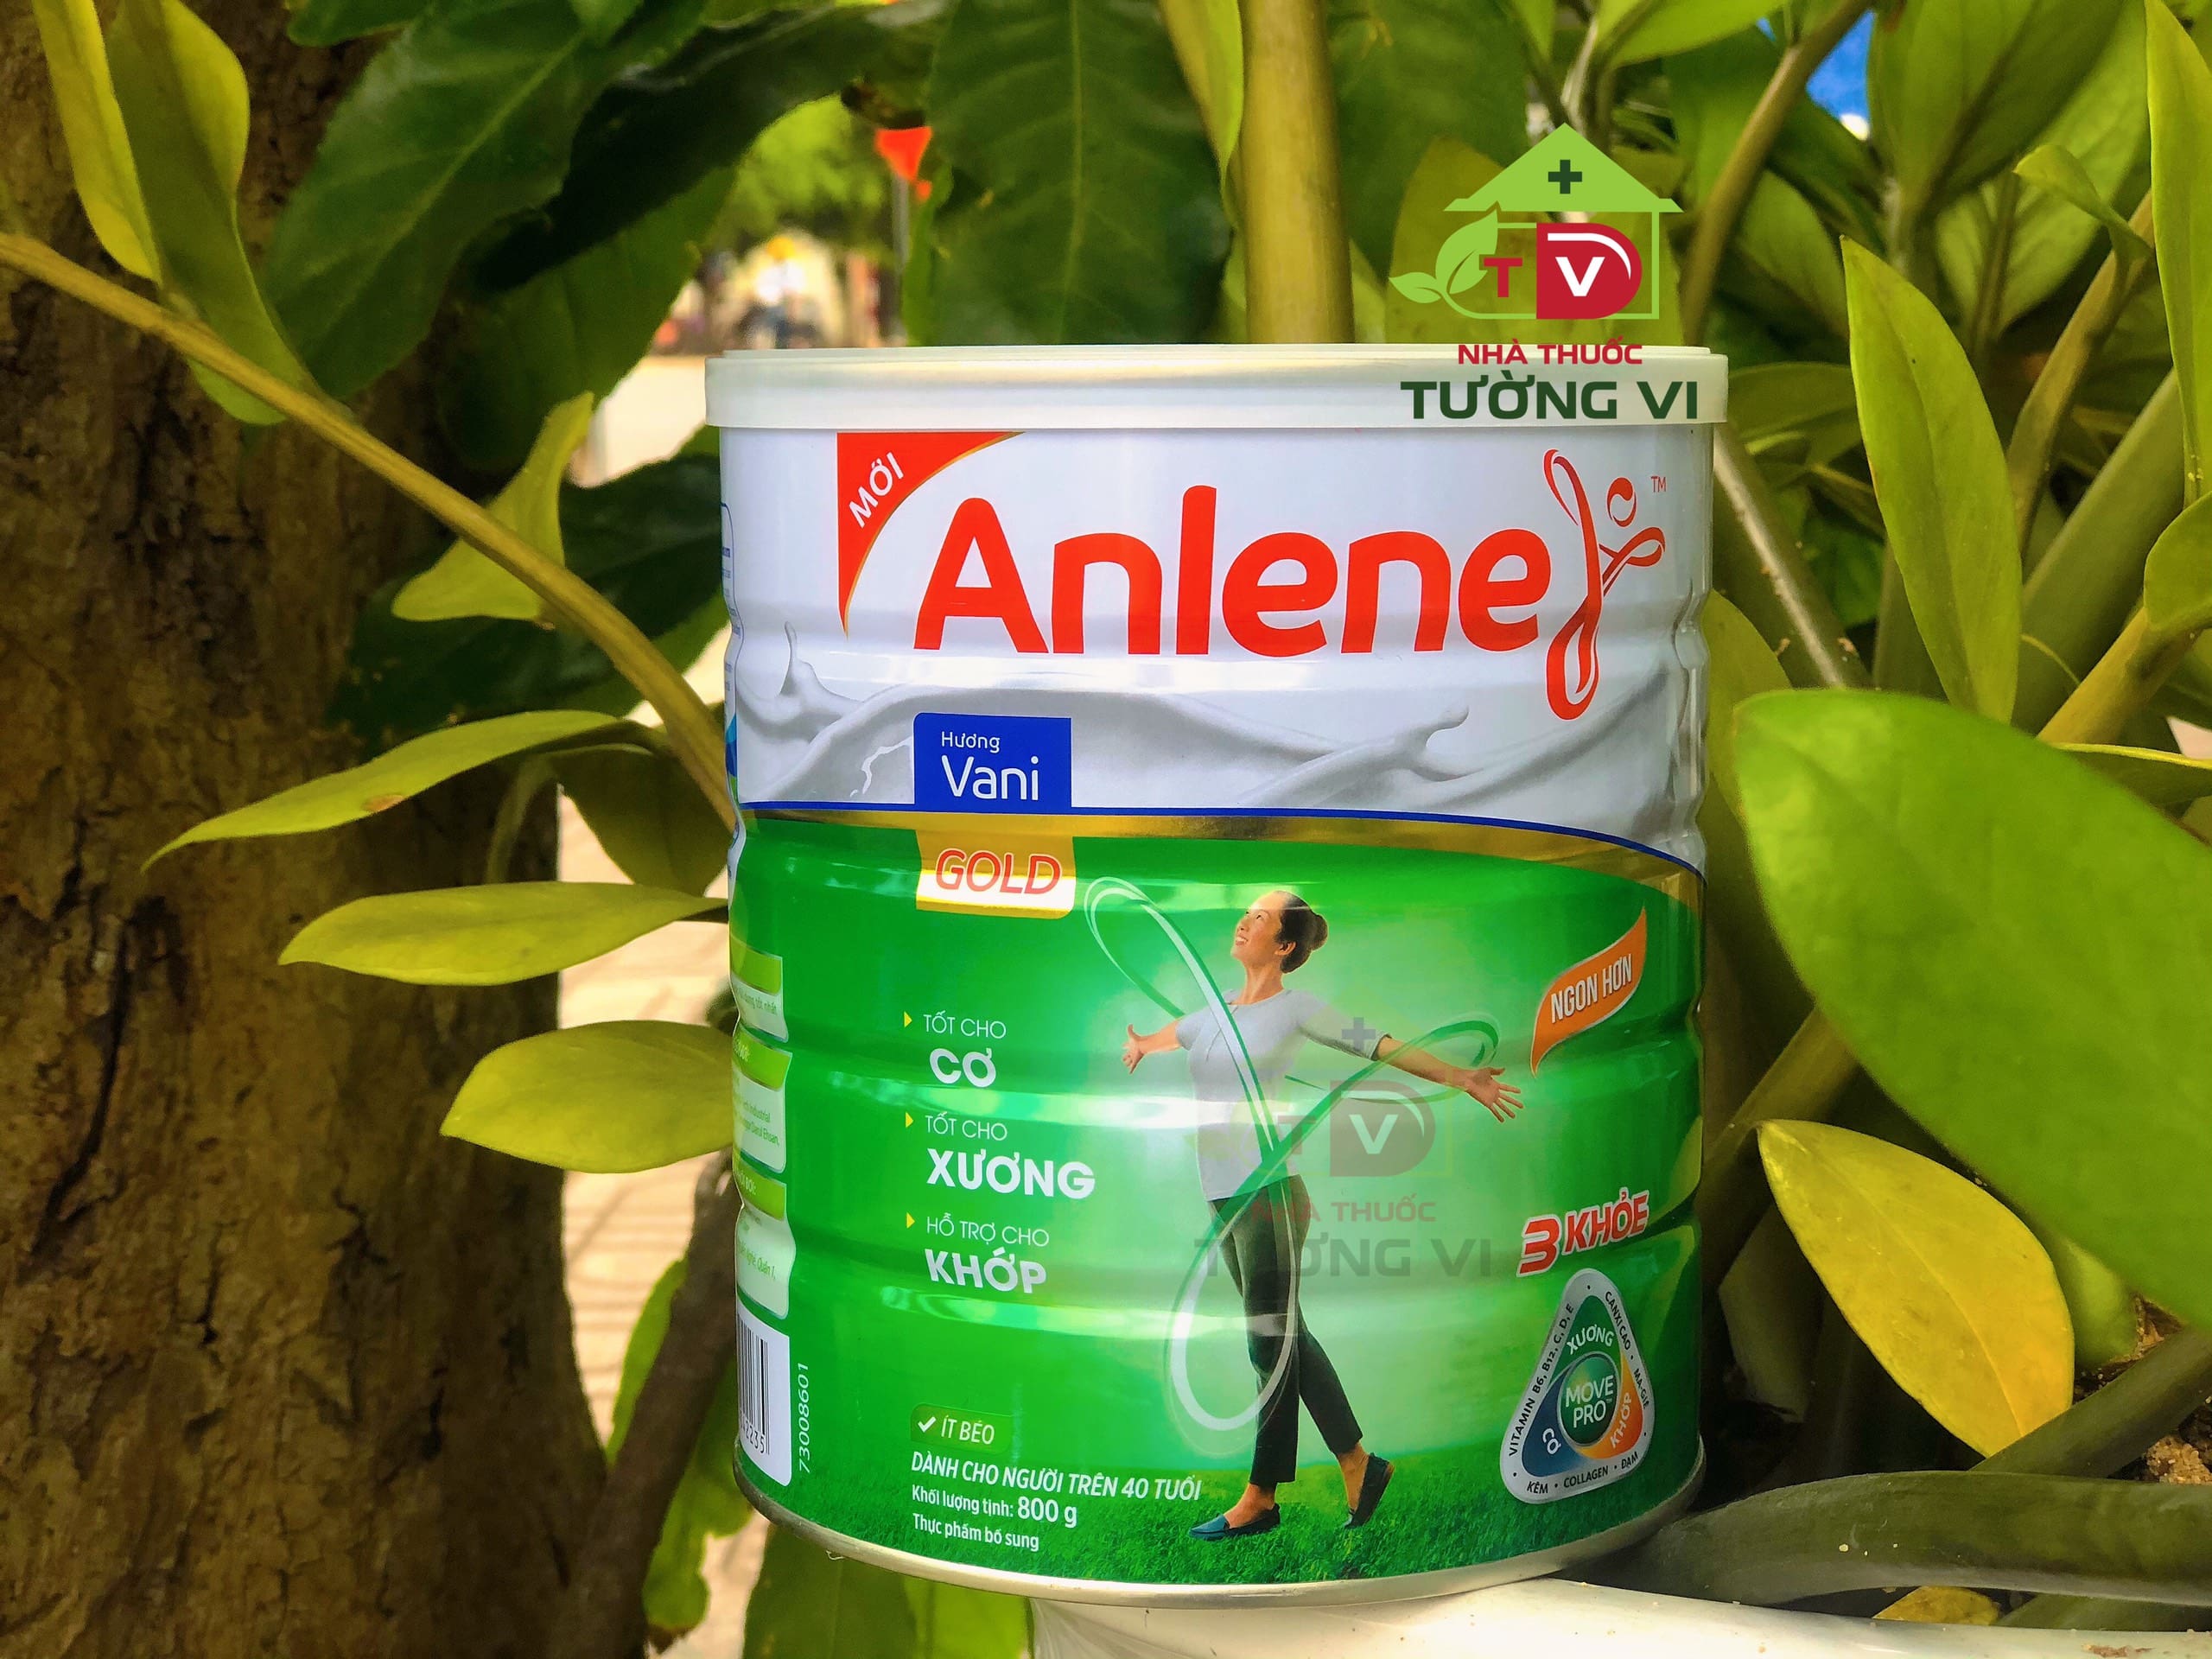 Sữa Anlene Gold 3 khỏe cơ - xương - khớp danh cho người trên 40 tuổi